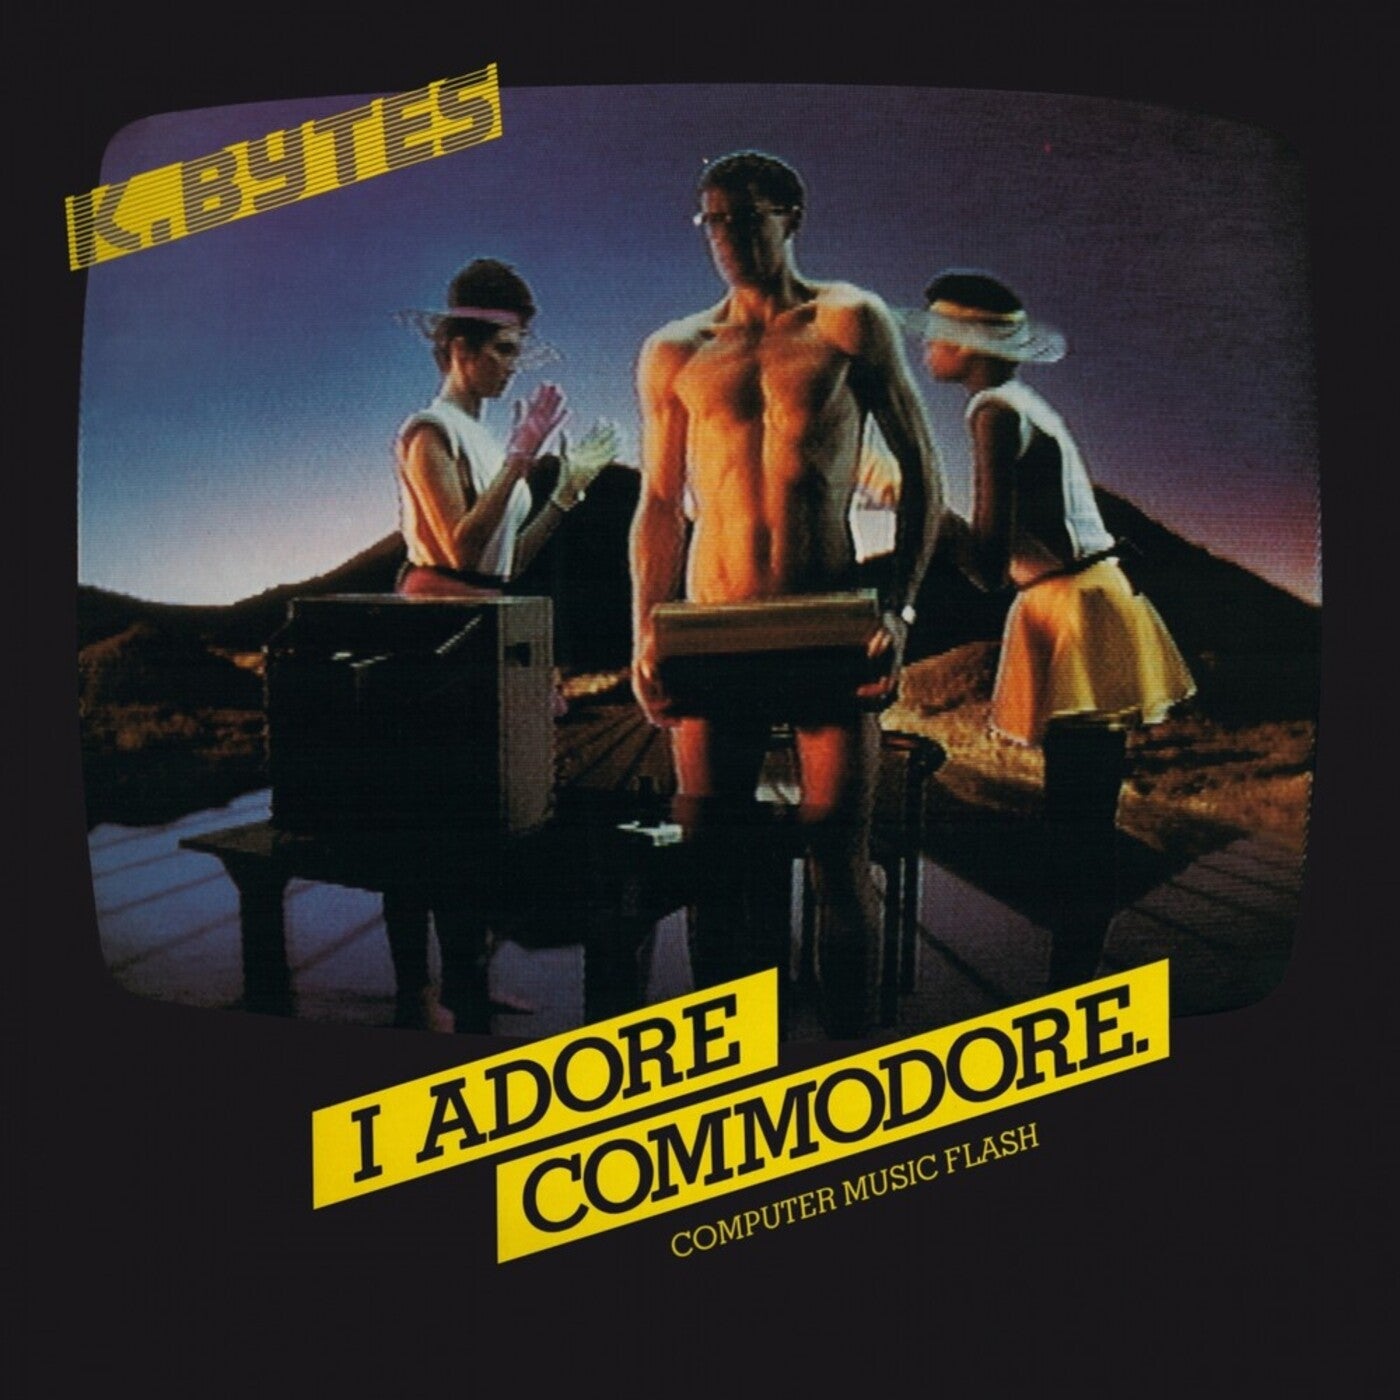 I Adore Commodore